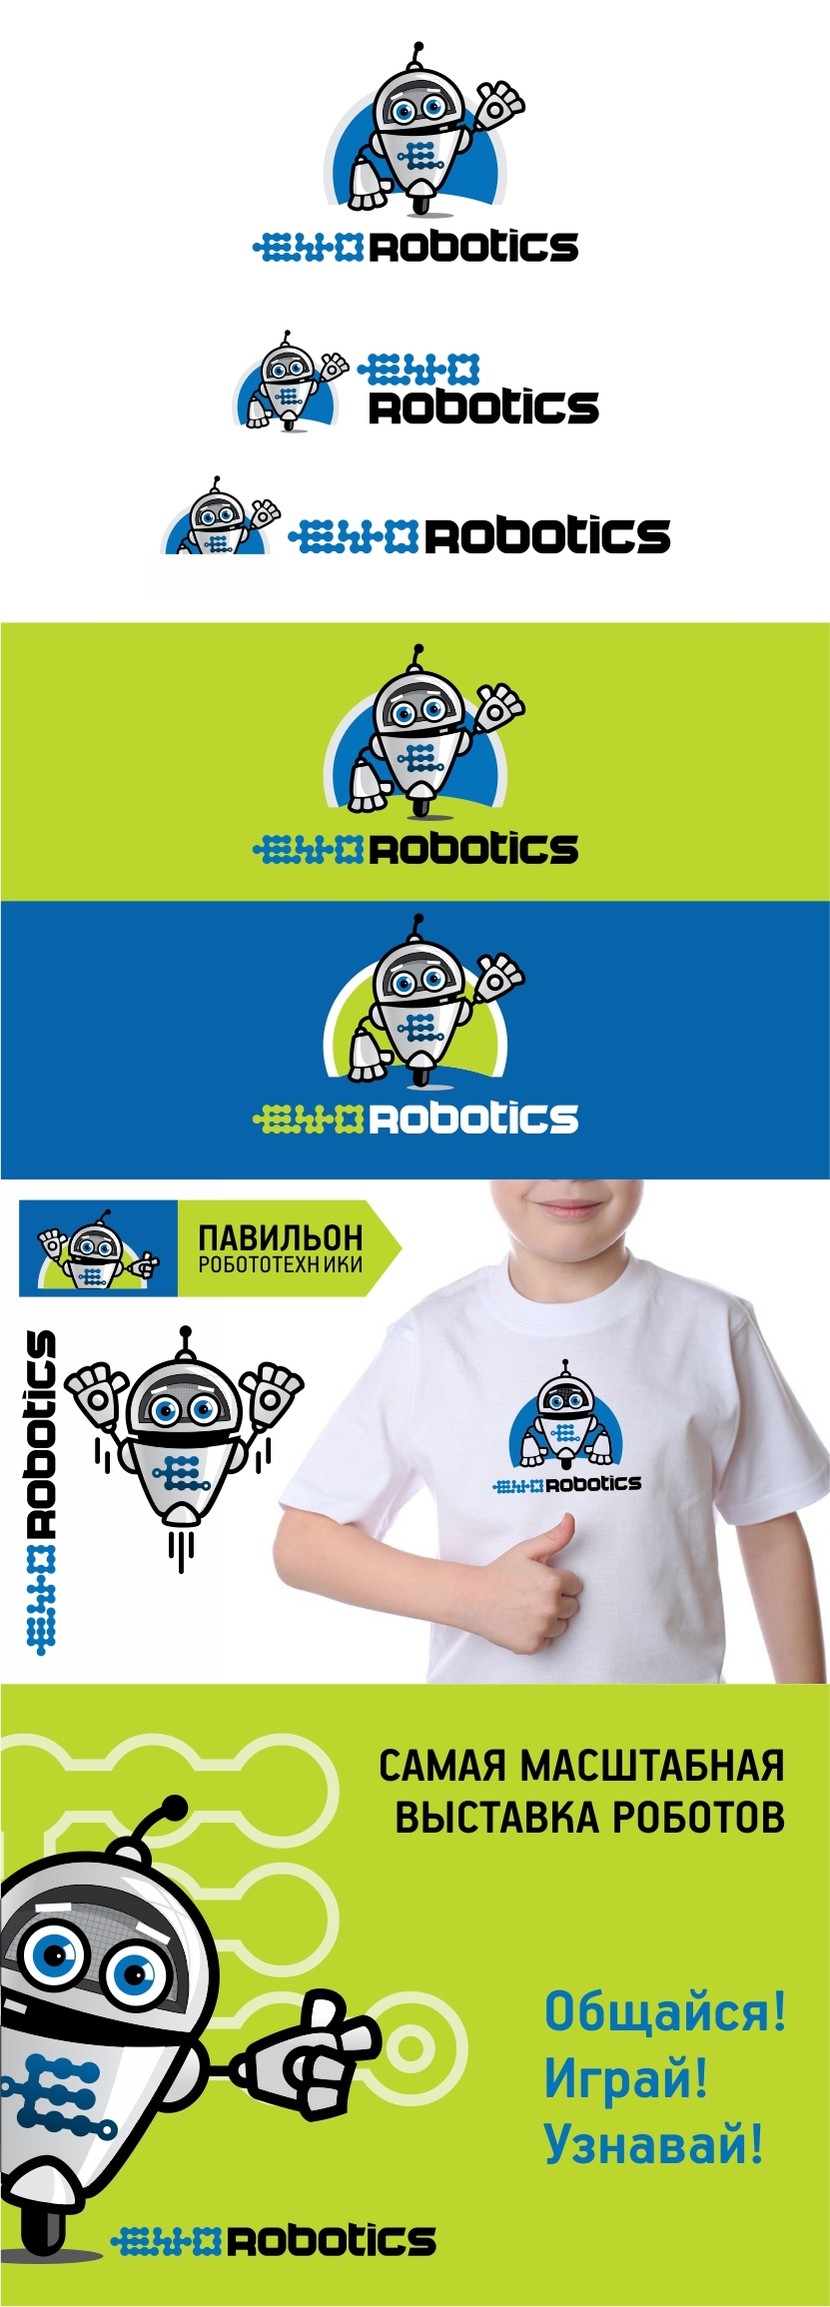 Логотип и фирменный стиль для выставки роботов & современных технологий и школы робототехники  работа №599590